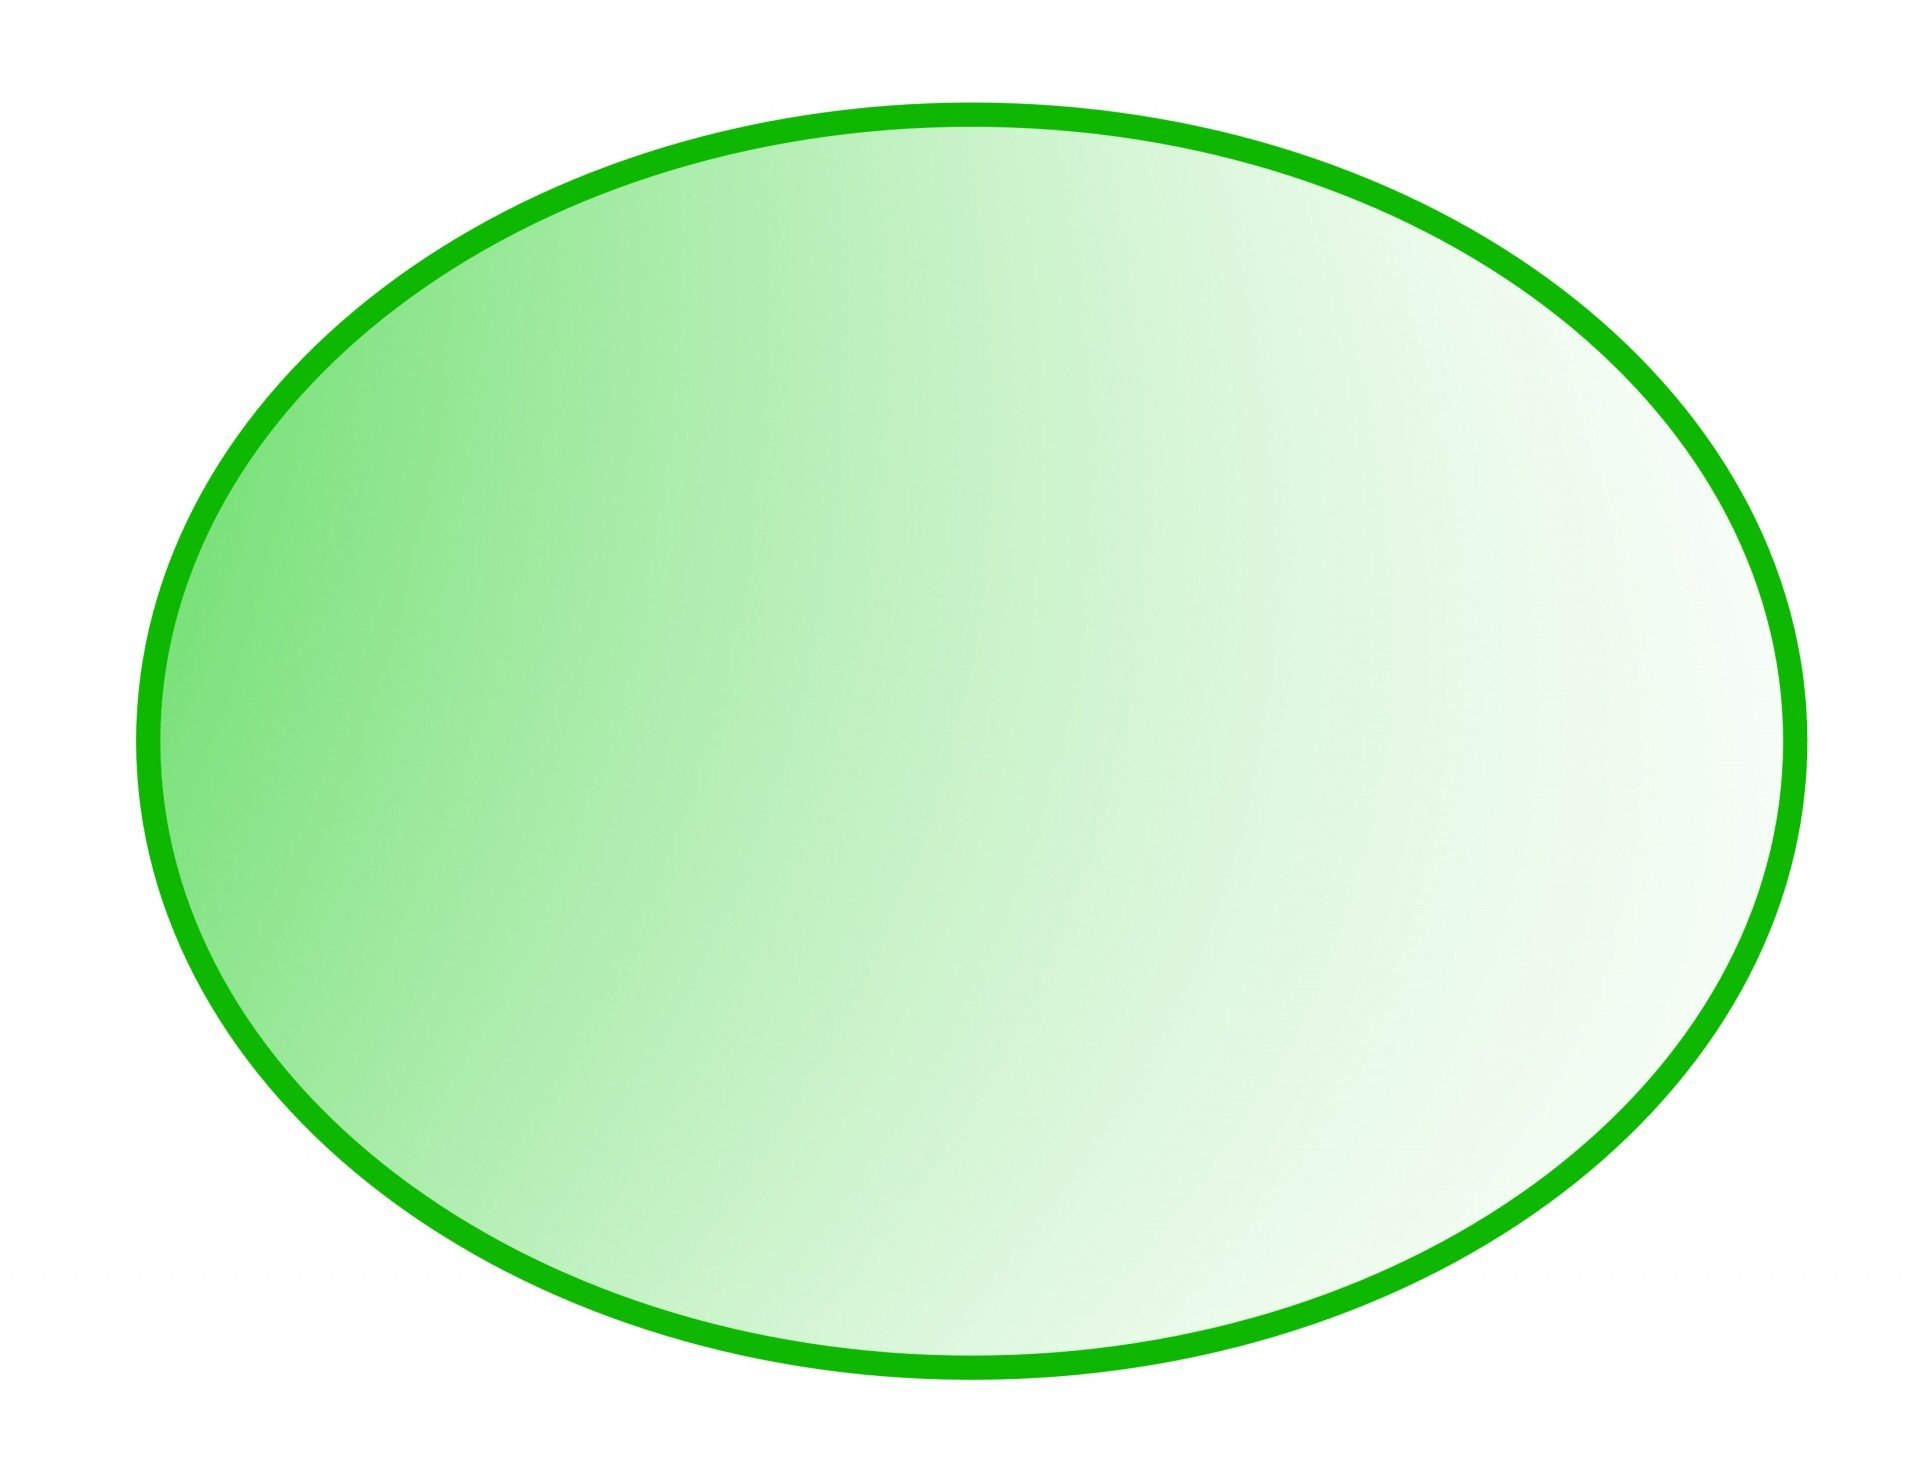 Одиночные округлые. Геометрические фигуры овал. Овал зеленый. Зеленый круг на прозрачном фоне. Овал на прозрачном фоне.